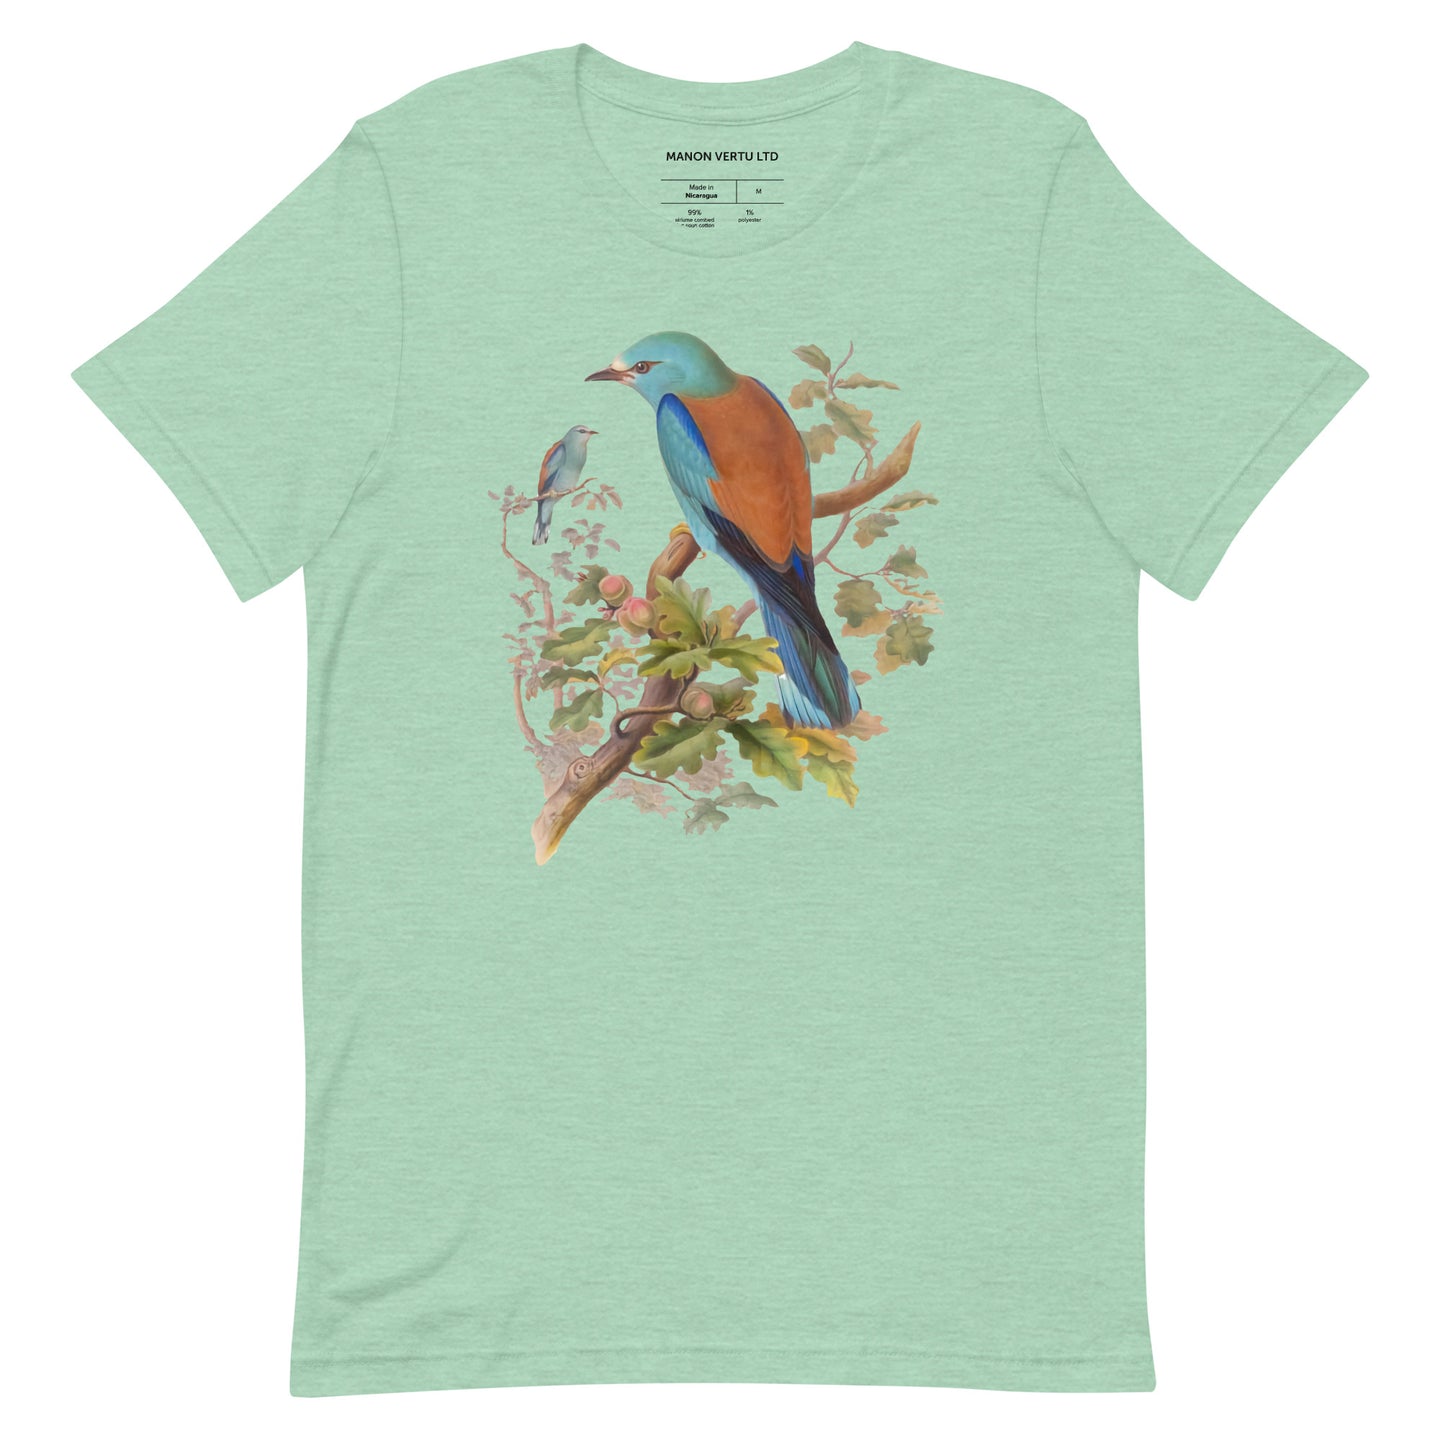 European Roller Avian Splendor Tshirt